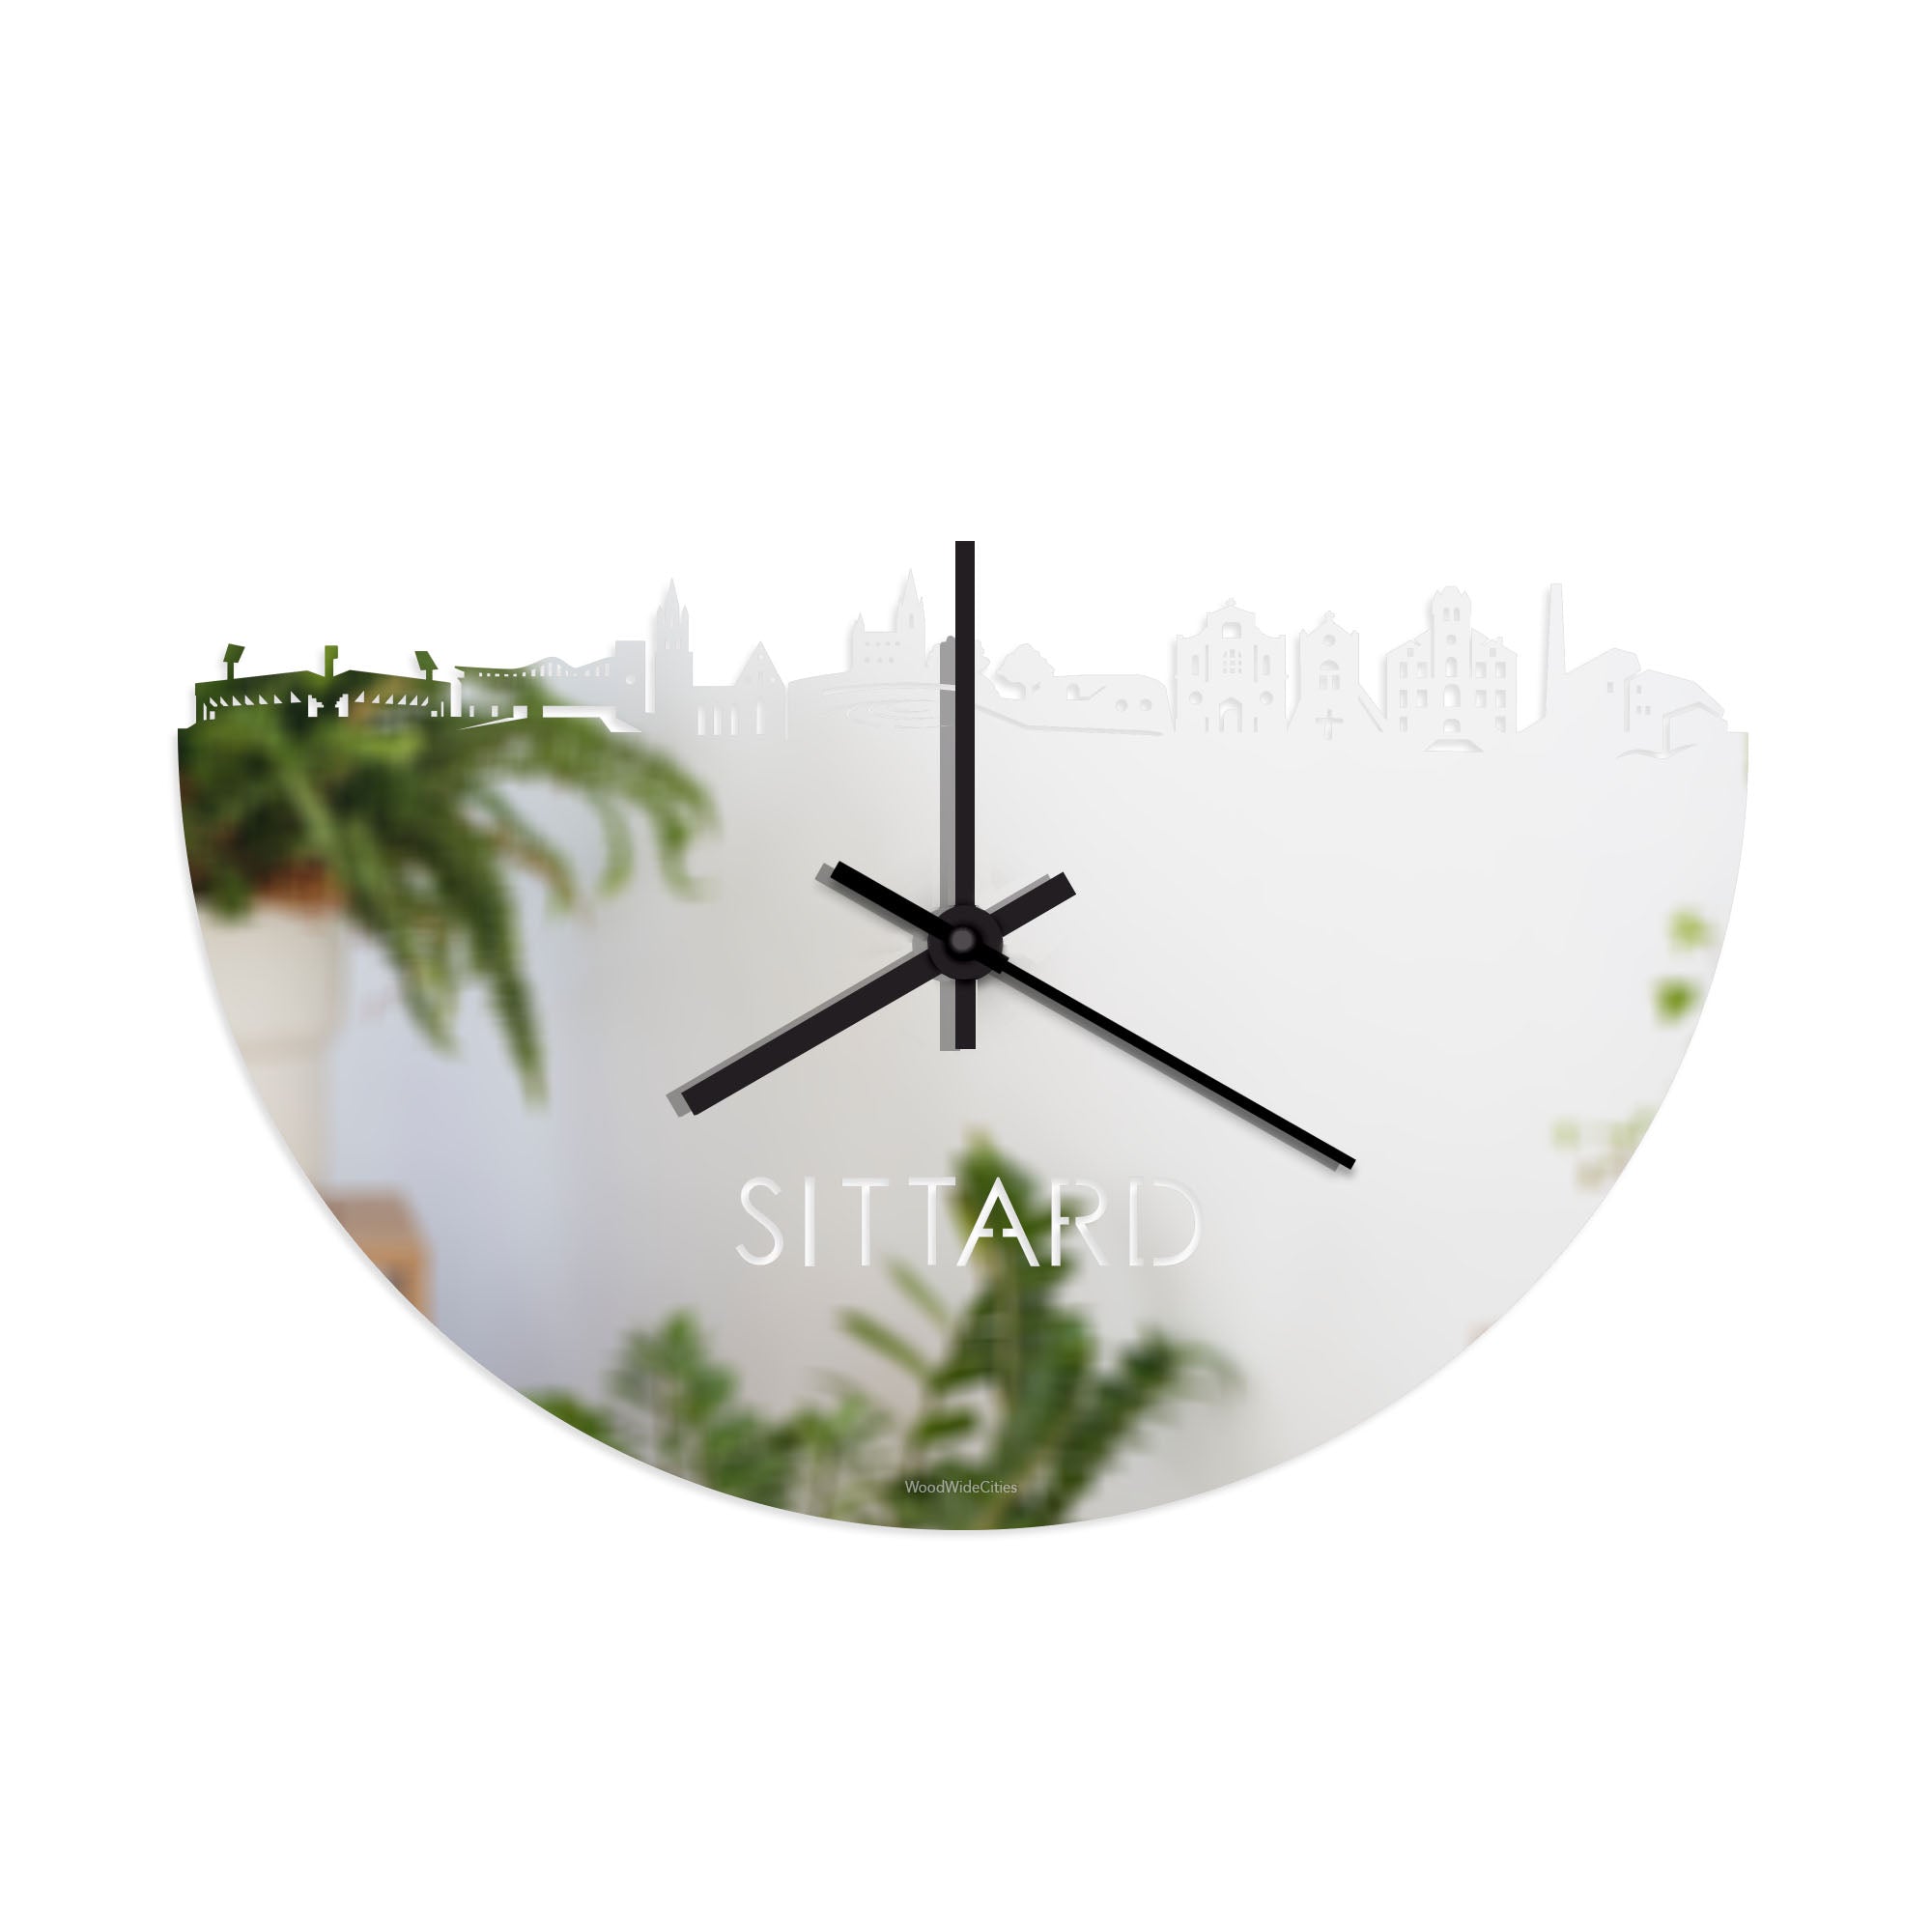 Skyline Klok Sittard Spiegel gerecycled kunststof cadeau wanddecoratie relatiegeschenk van WoodWideCities